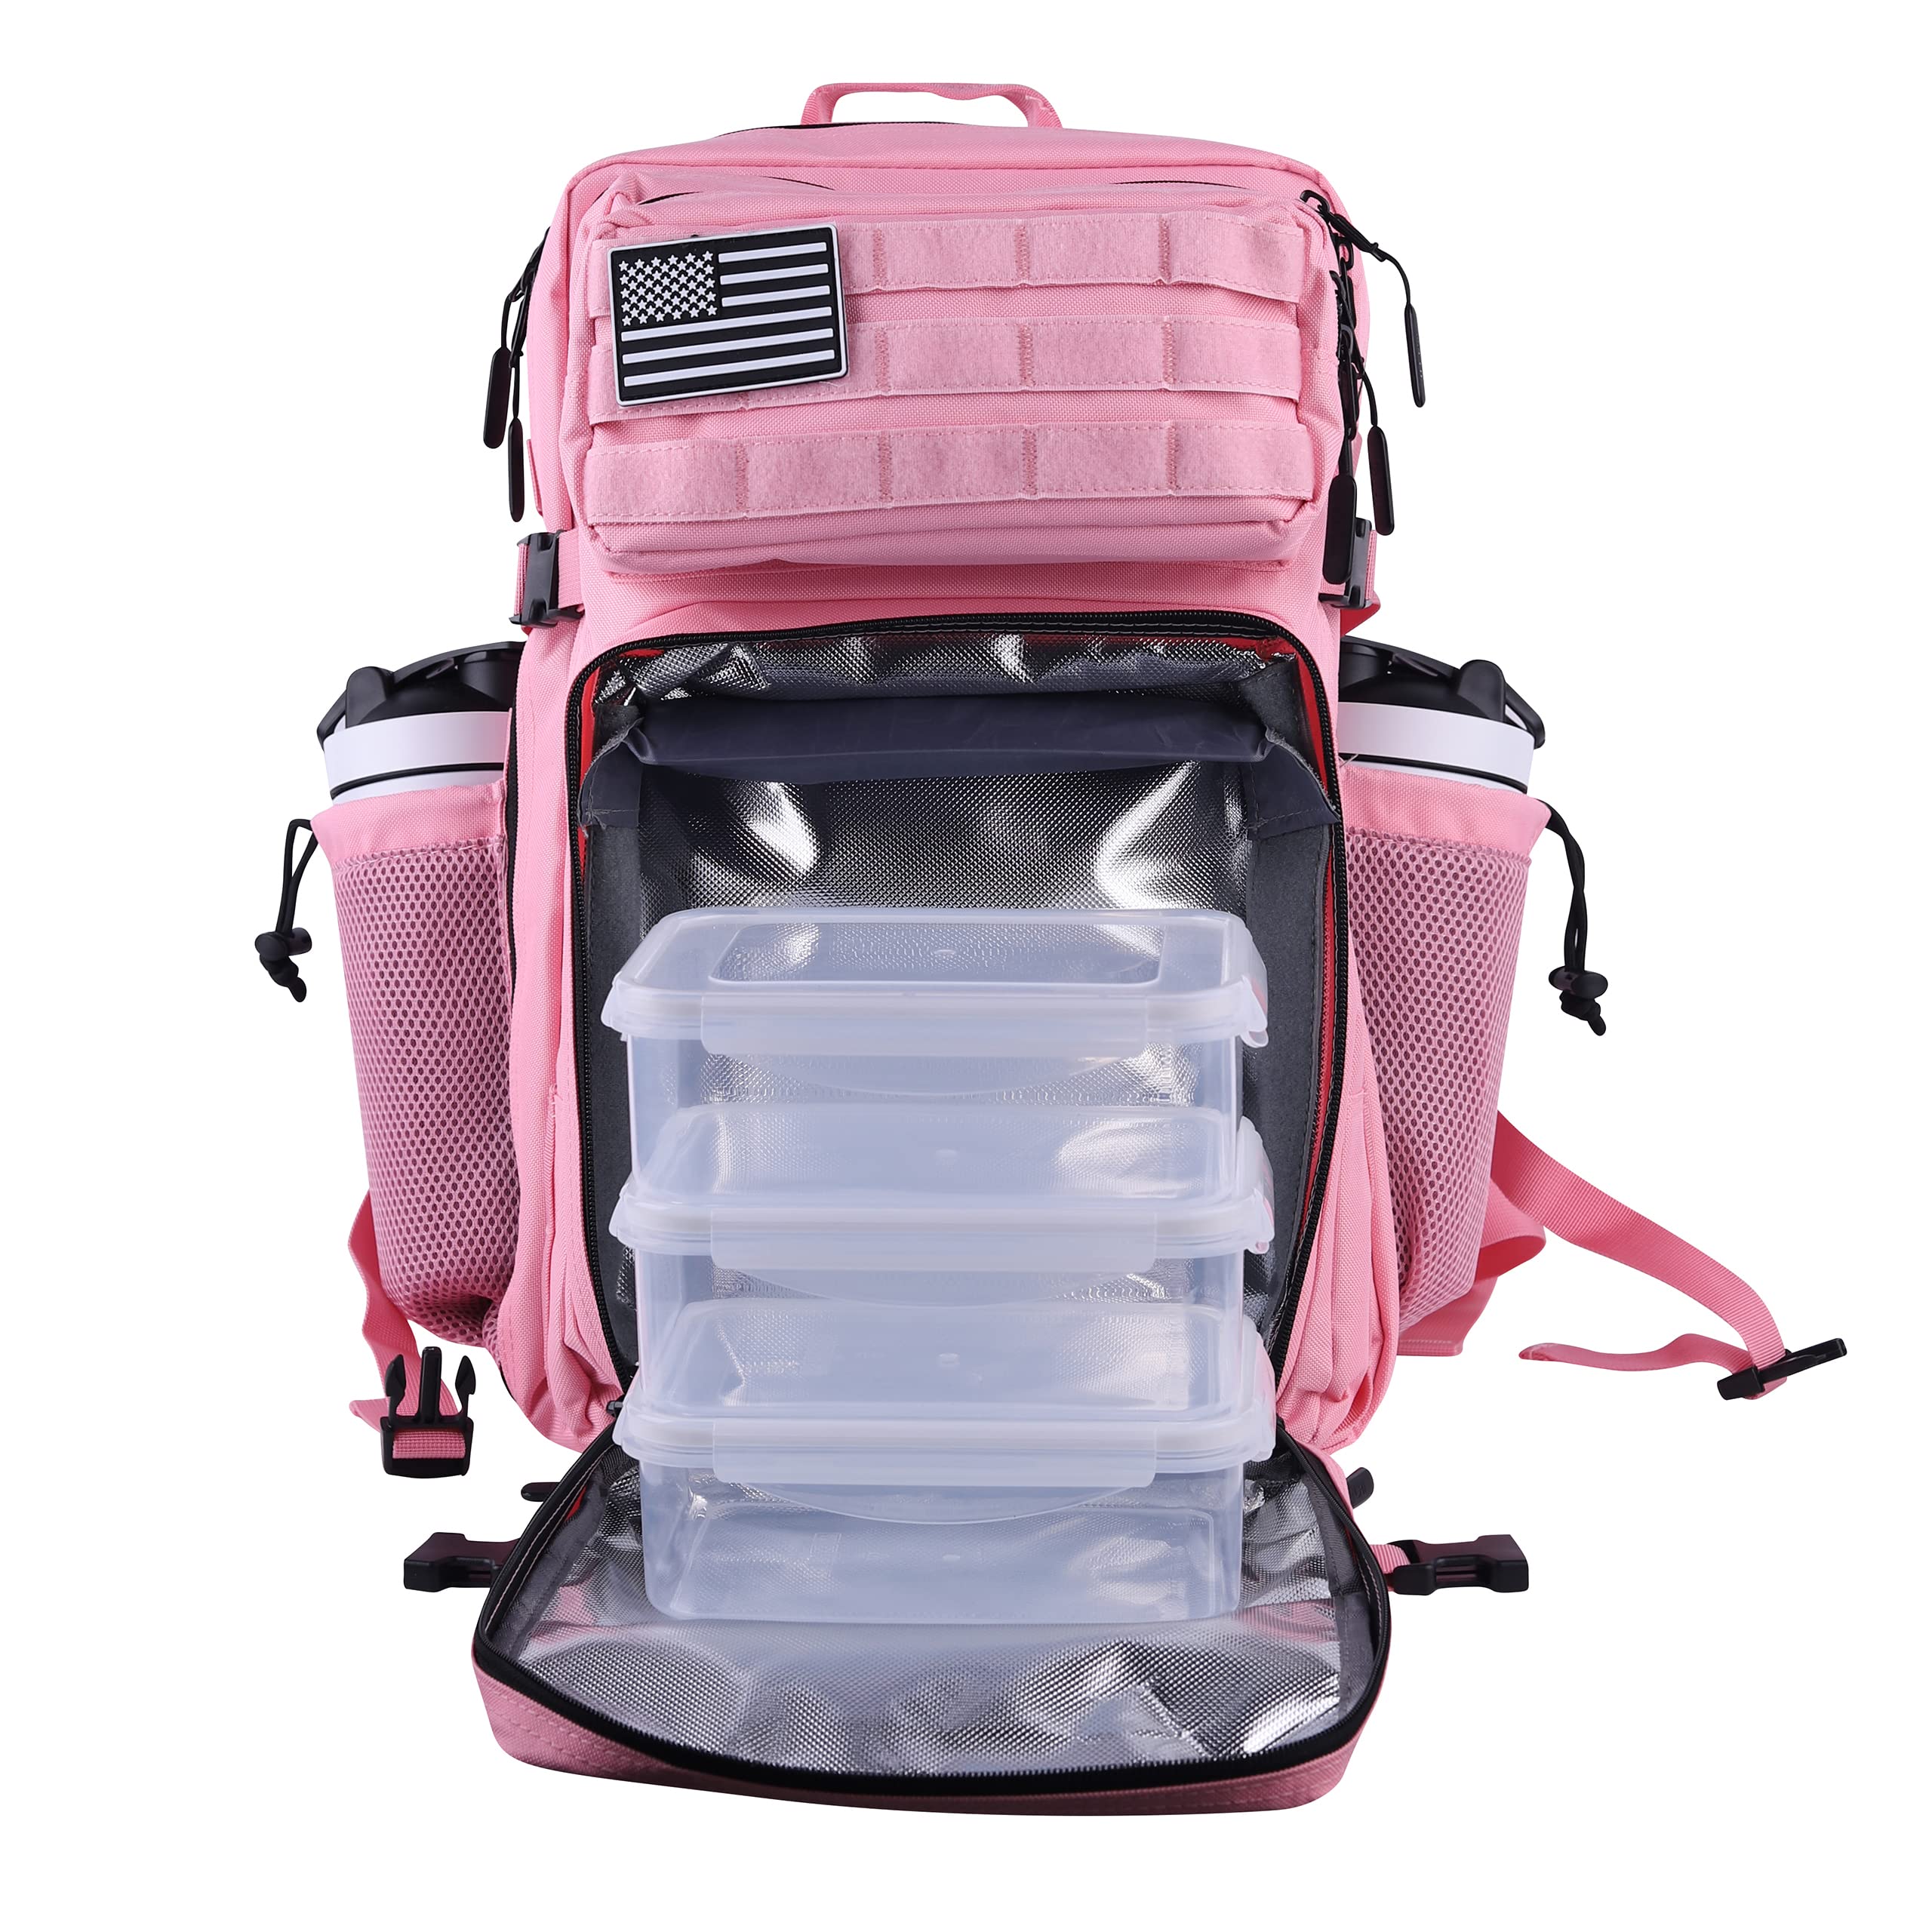 送料無料LHI Tactical Meal Prep Backpack 45L Insulated Cooler Lunch Backpack with Cup Holders for Gym Camping Hiking Train